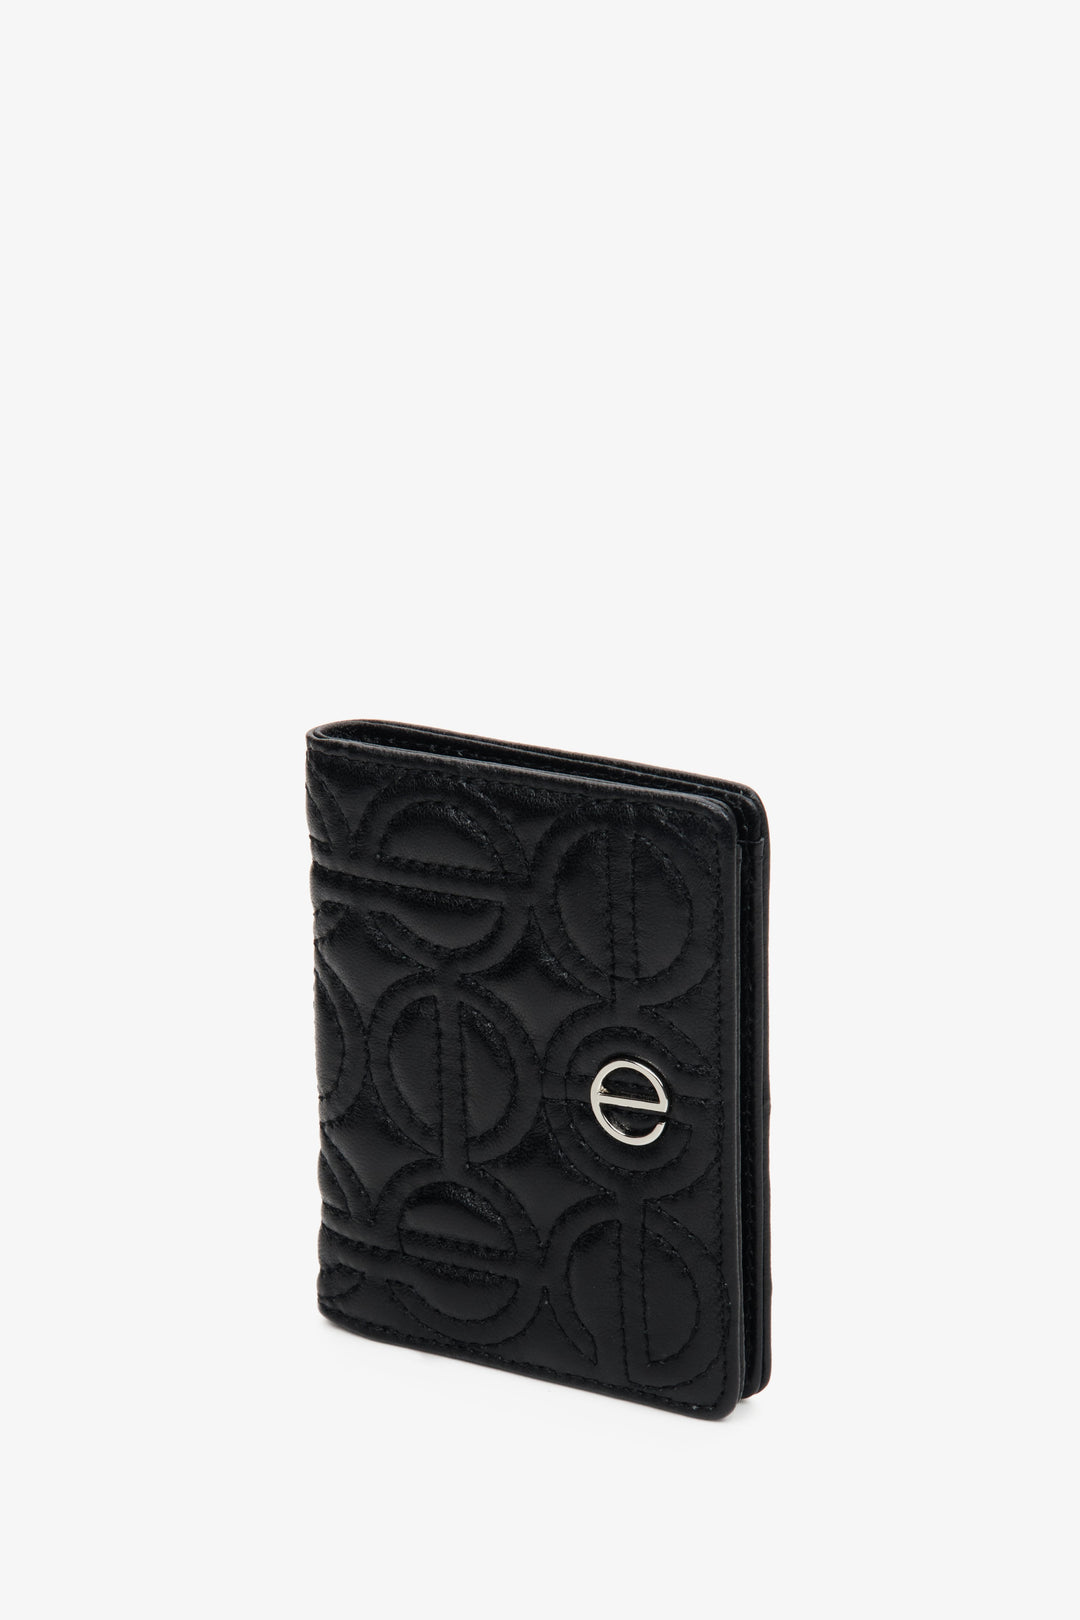 Skórzany, mały portfel damski w kolorze czarnym ze srebrnymi okuciami marki Estro.